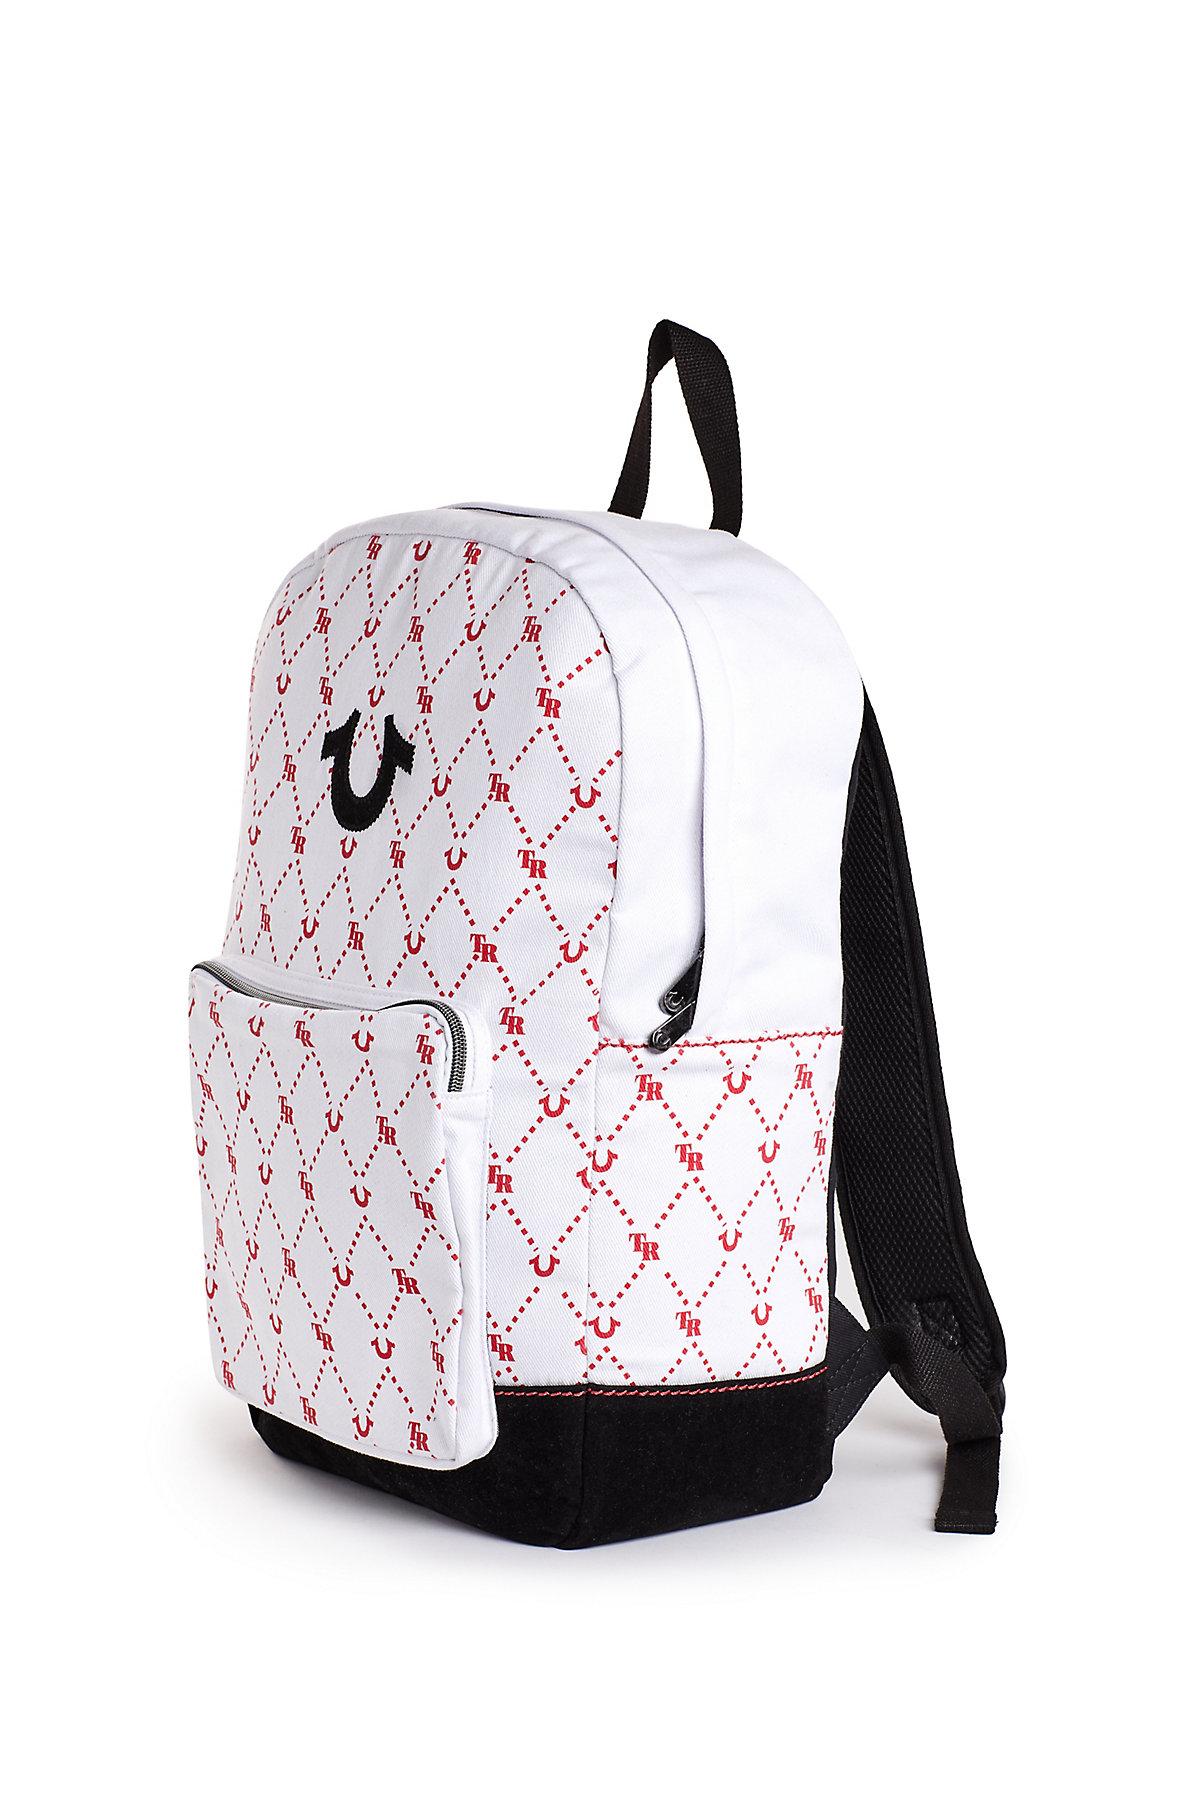 True Religion Monogram Backpack in 